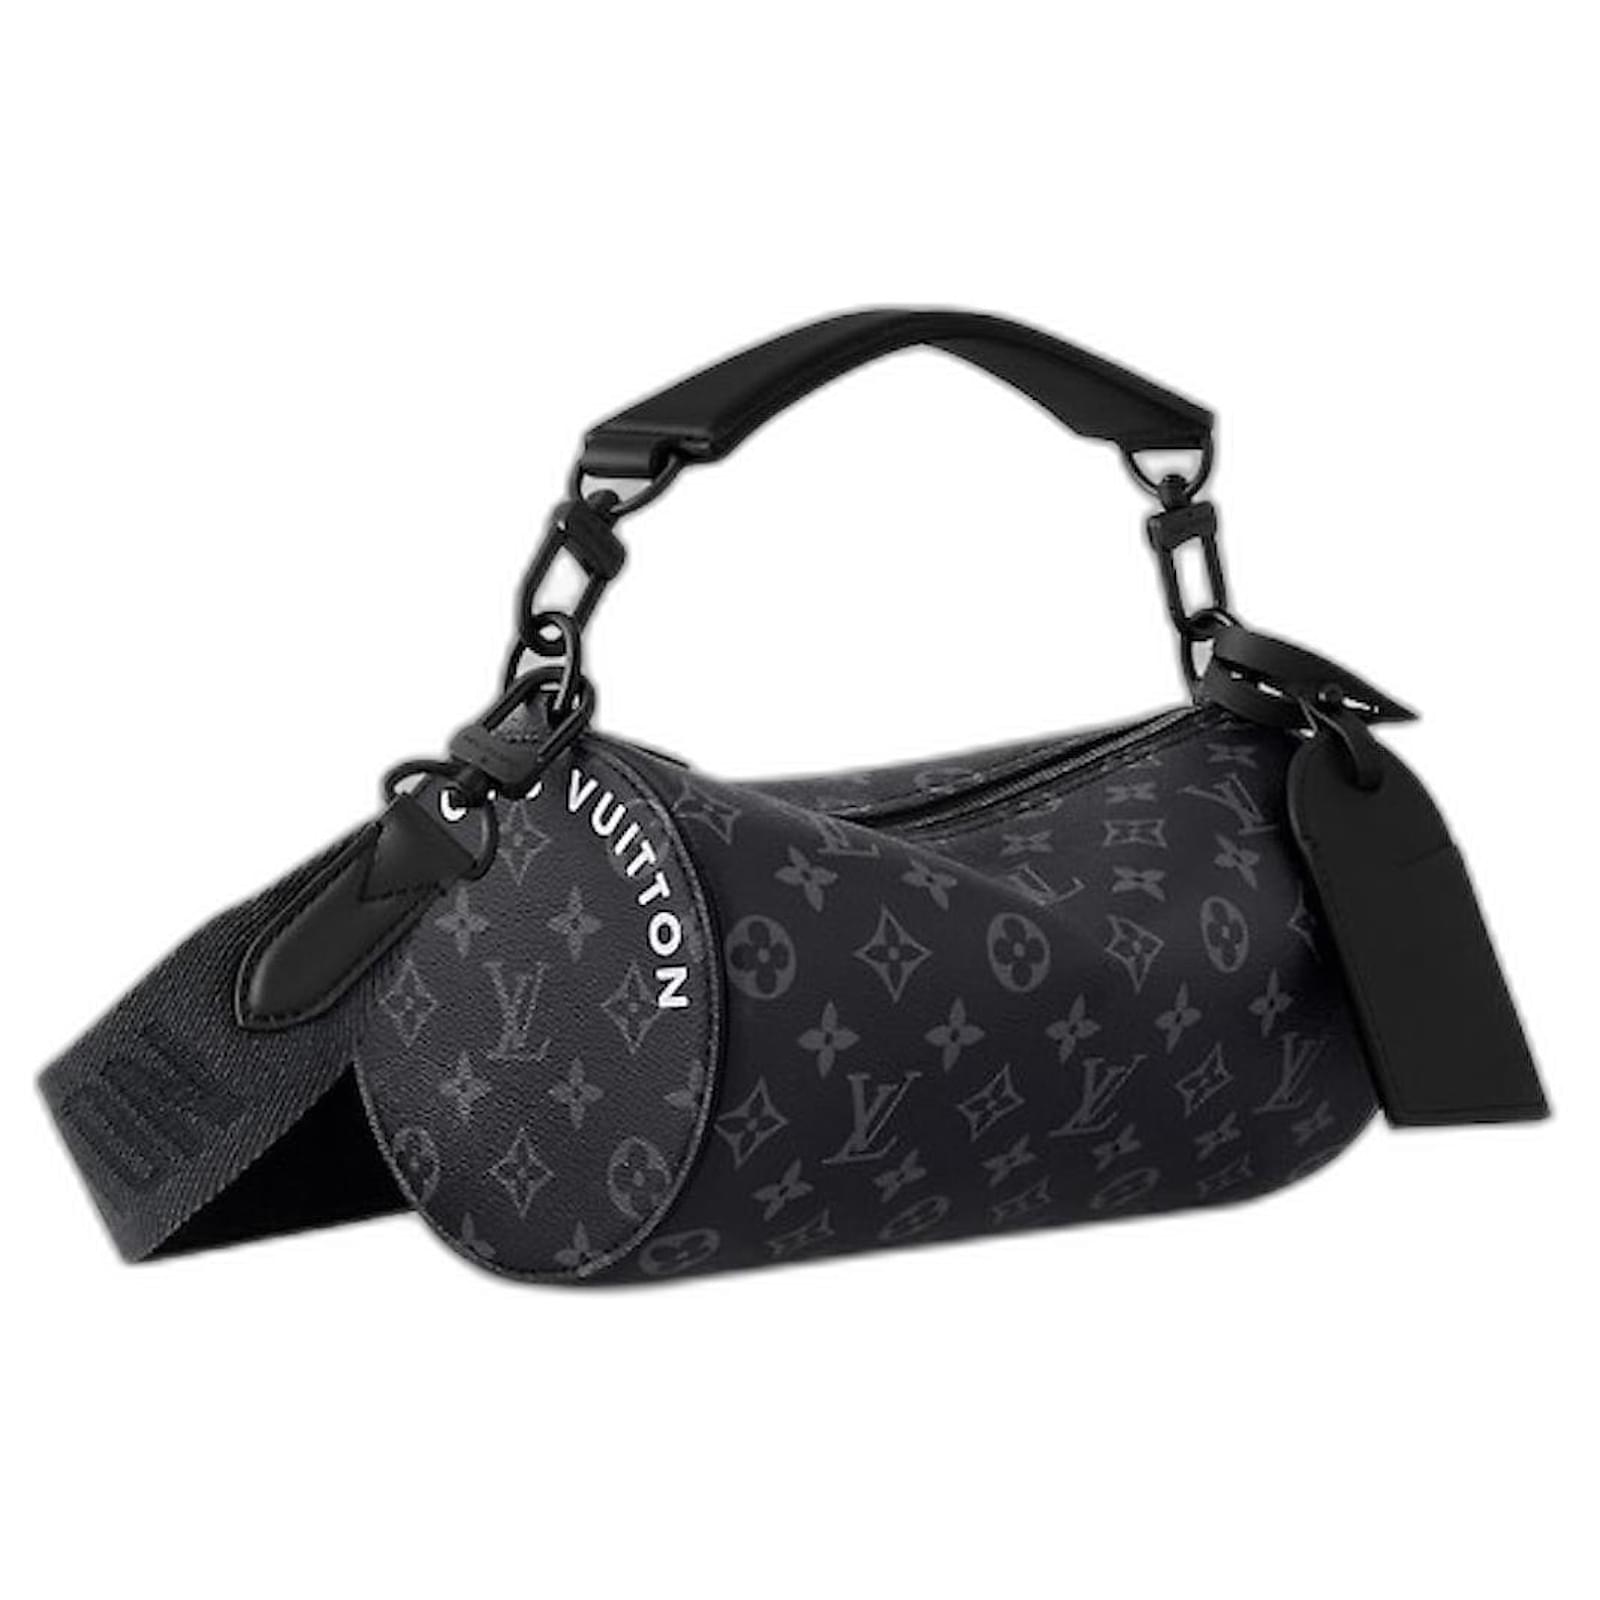 Louis Vuitton Men’s Messenger Voyage Pm Shoulder Bag Monogram Eclipse Black  Gray